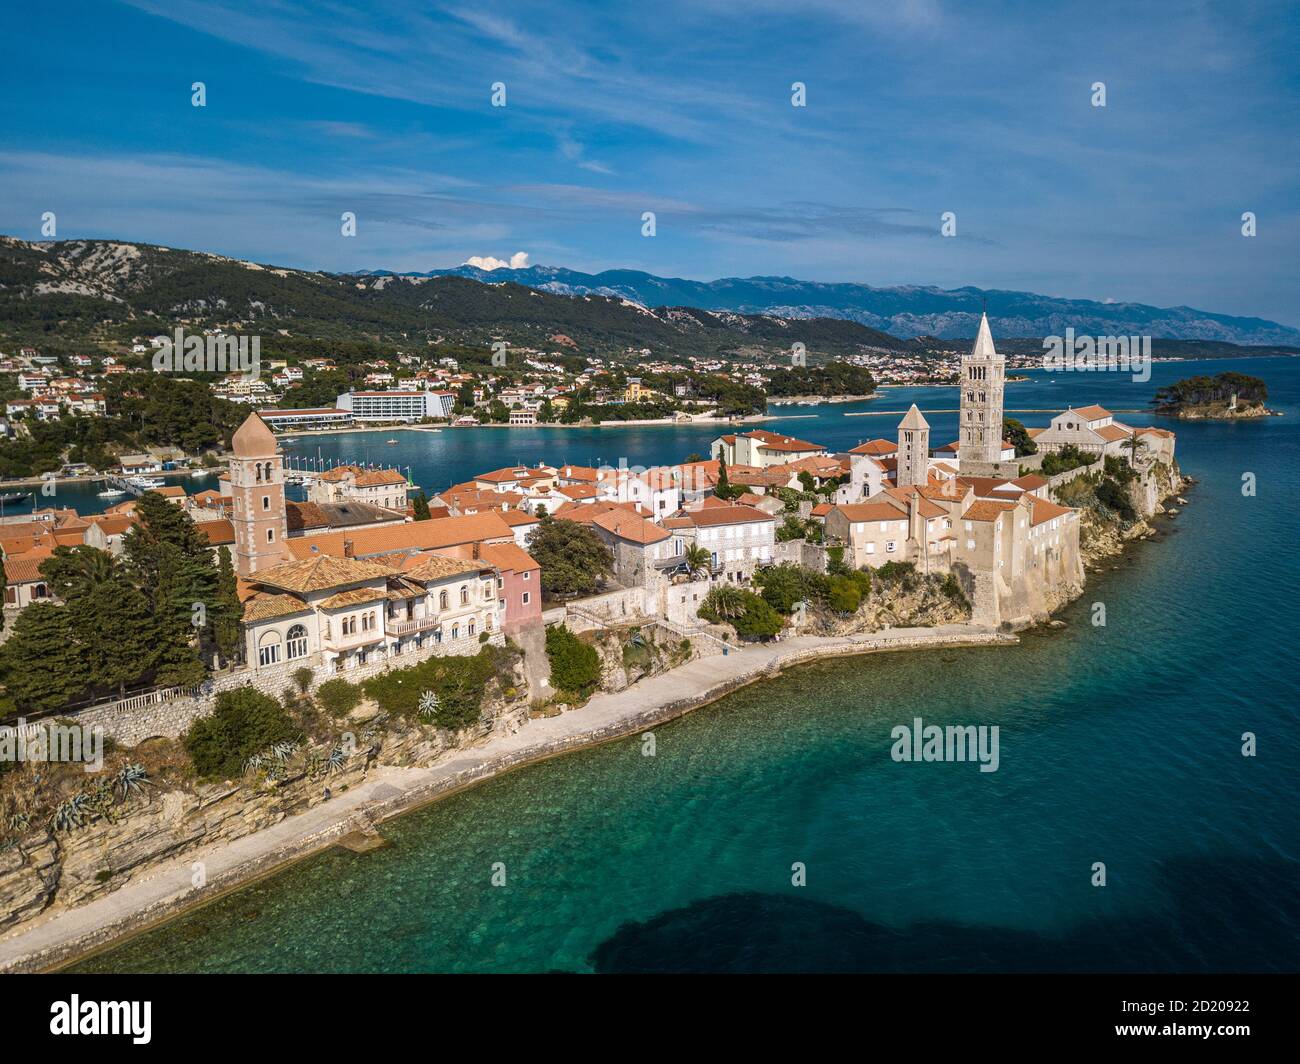 Vue aérienne de la vieille ville de Rab, Croatie, mer Adriatique. Vieille ville entourée par la mer Adriatique. Banque D'Images